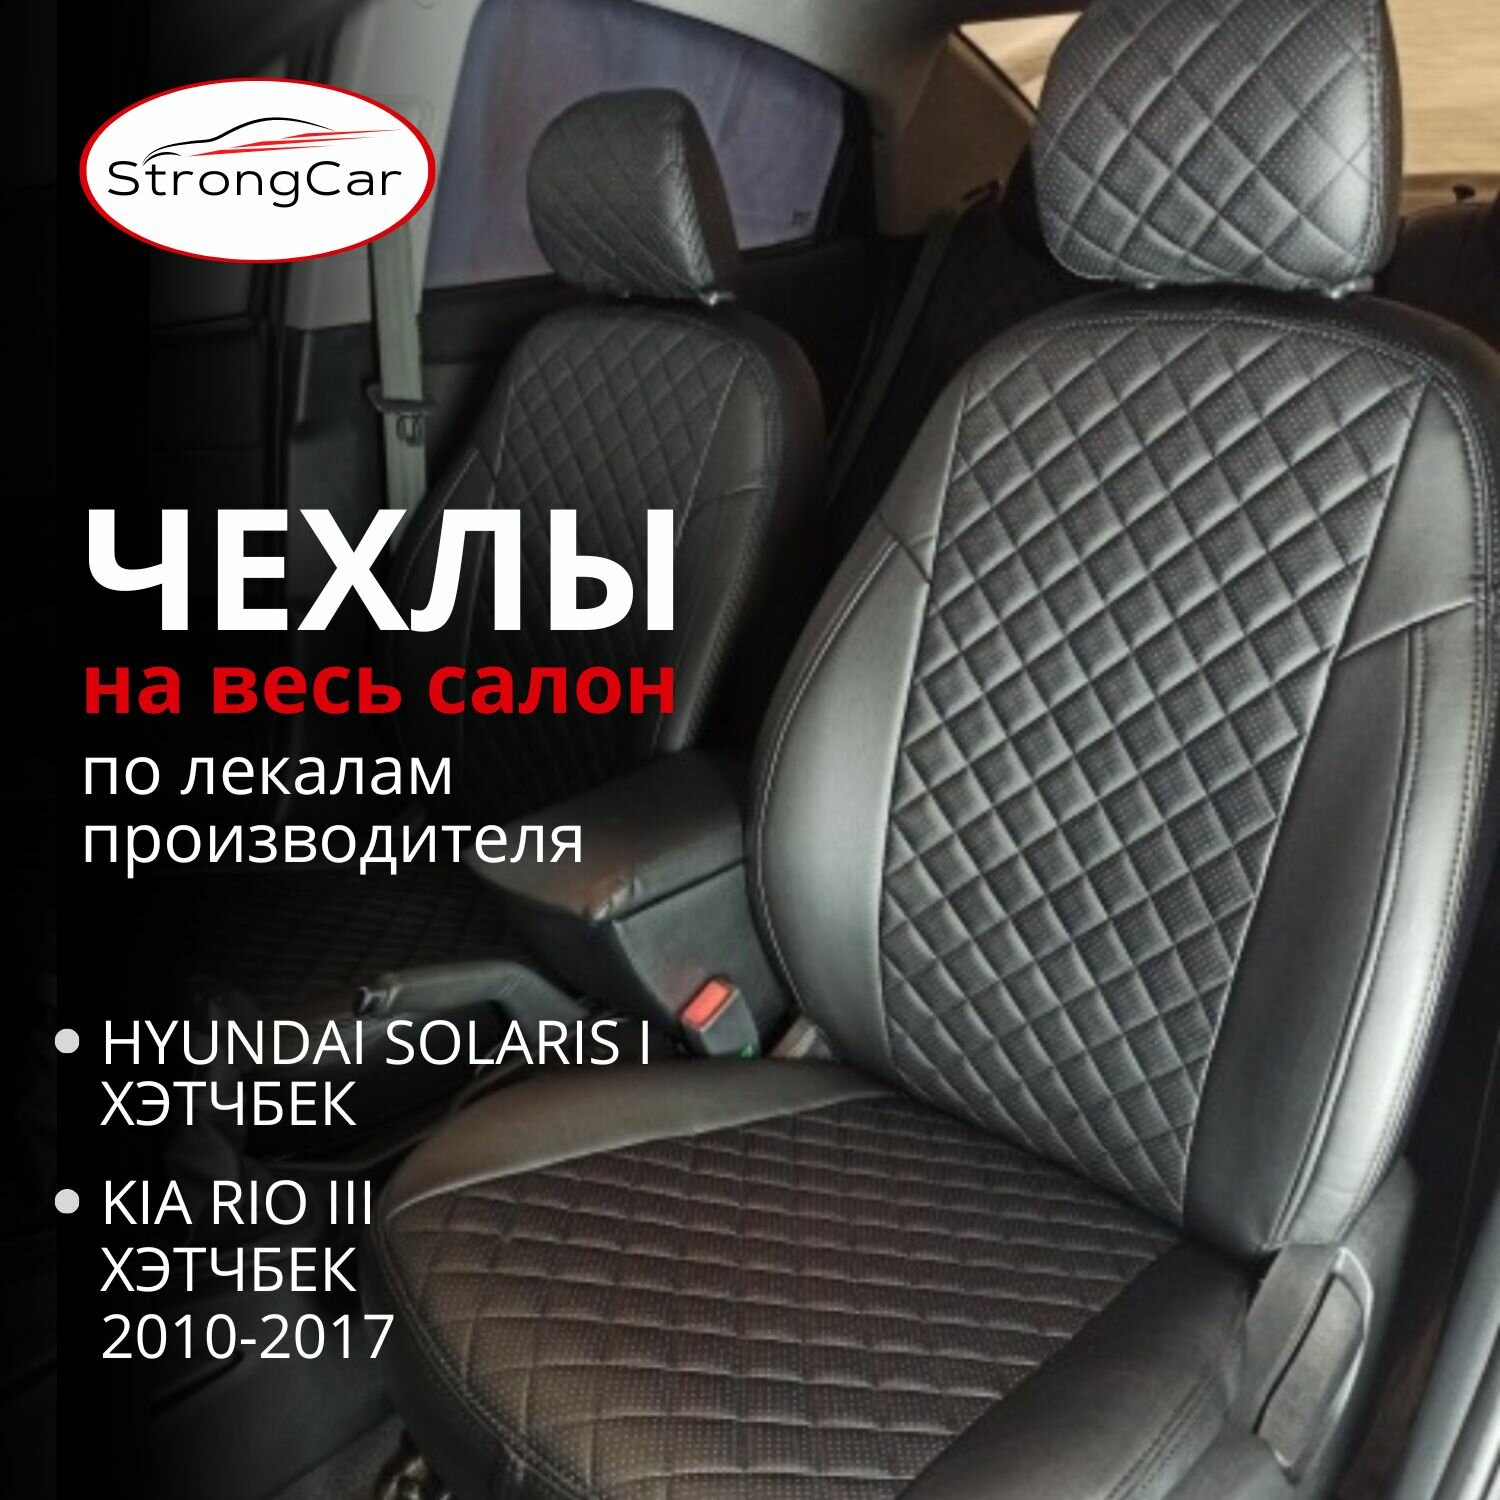 Комплект чехлов на сиденья автомобиля для Hyundai Solaris и Kia Rio